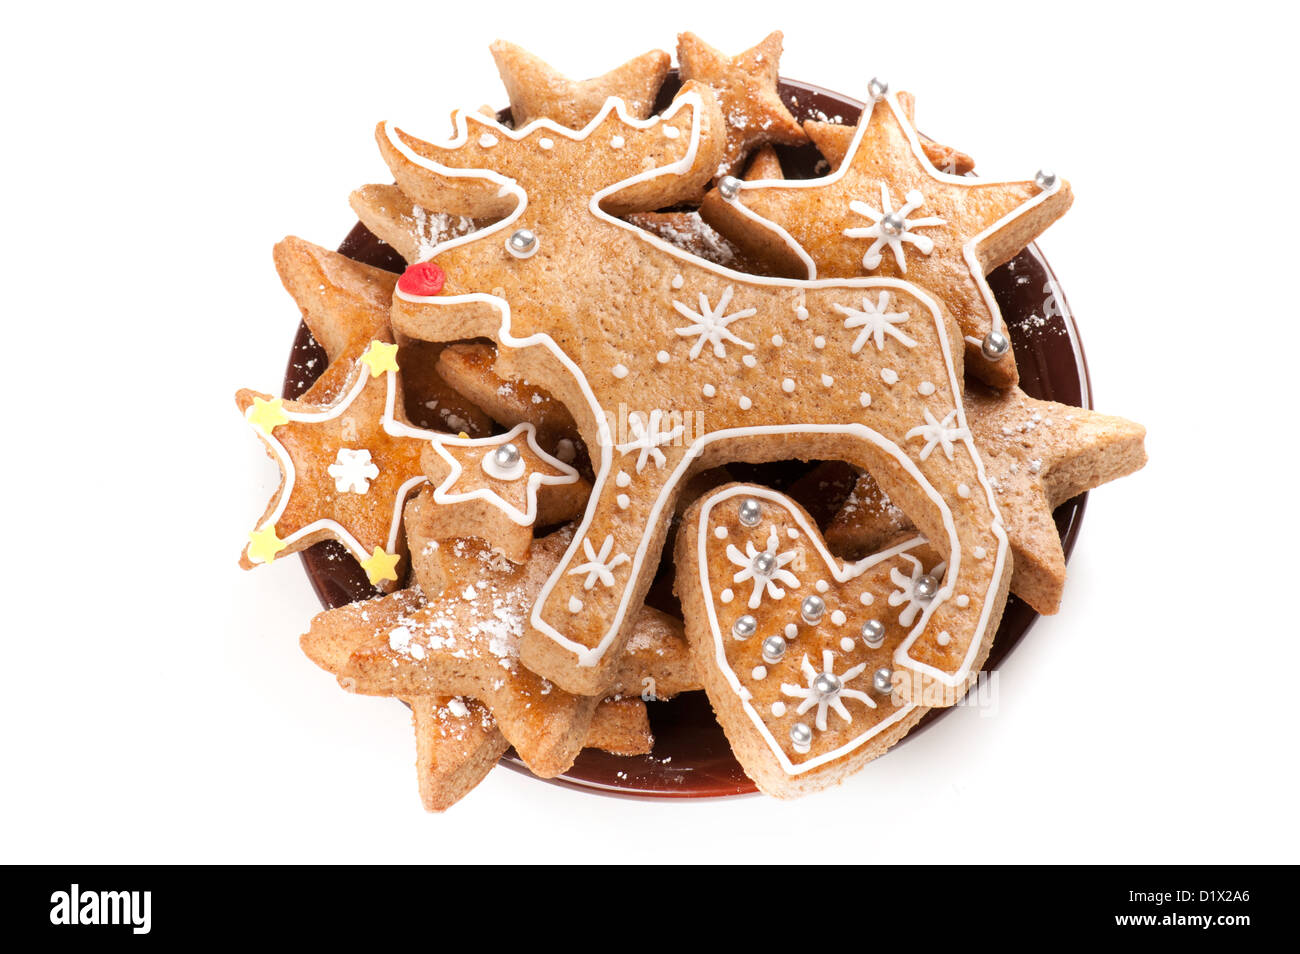 Gingerbread cookies de Noël sur fond blanc Banque D'Images